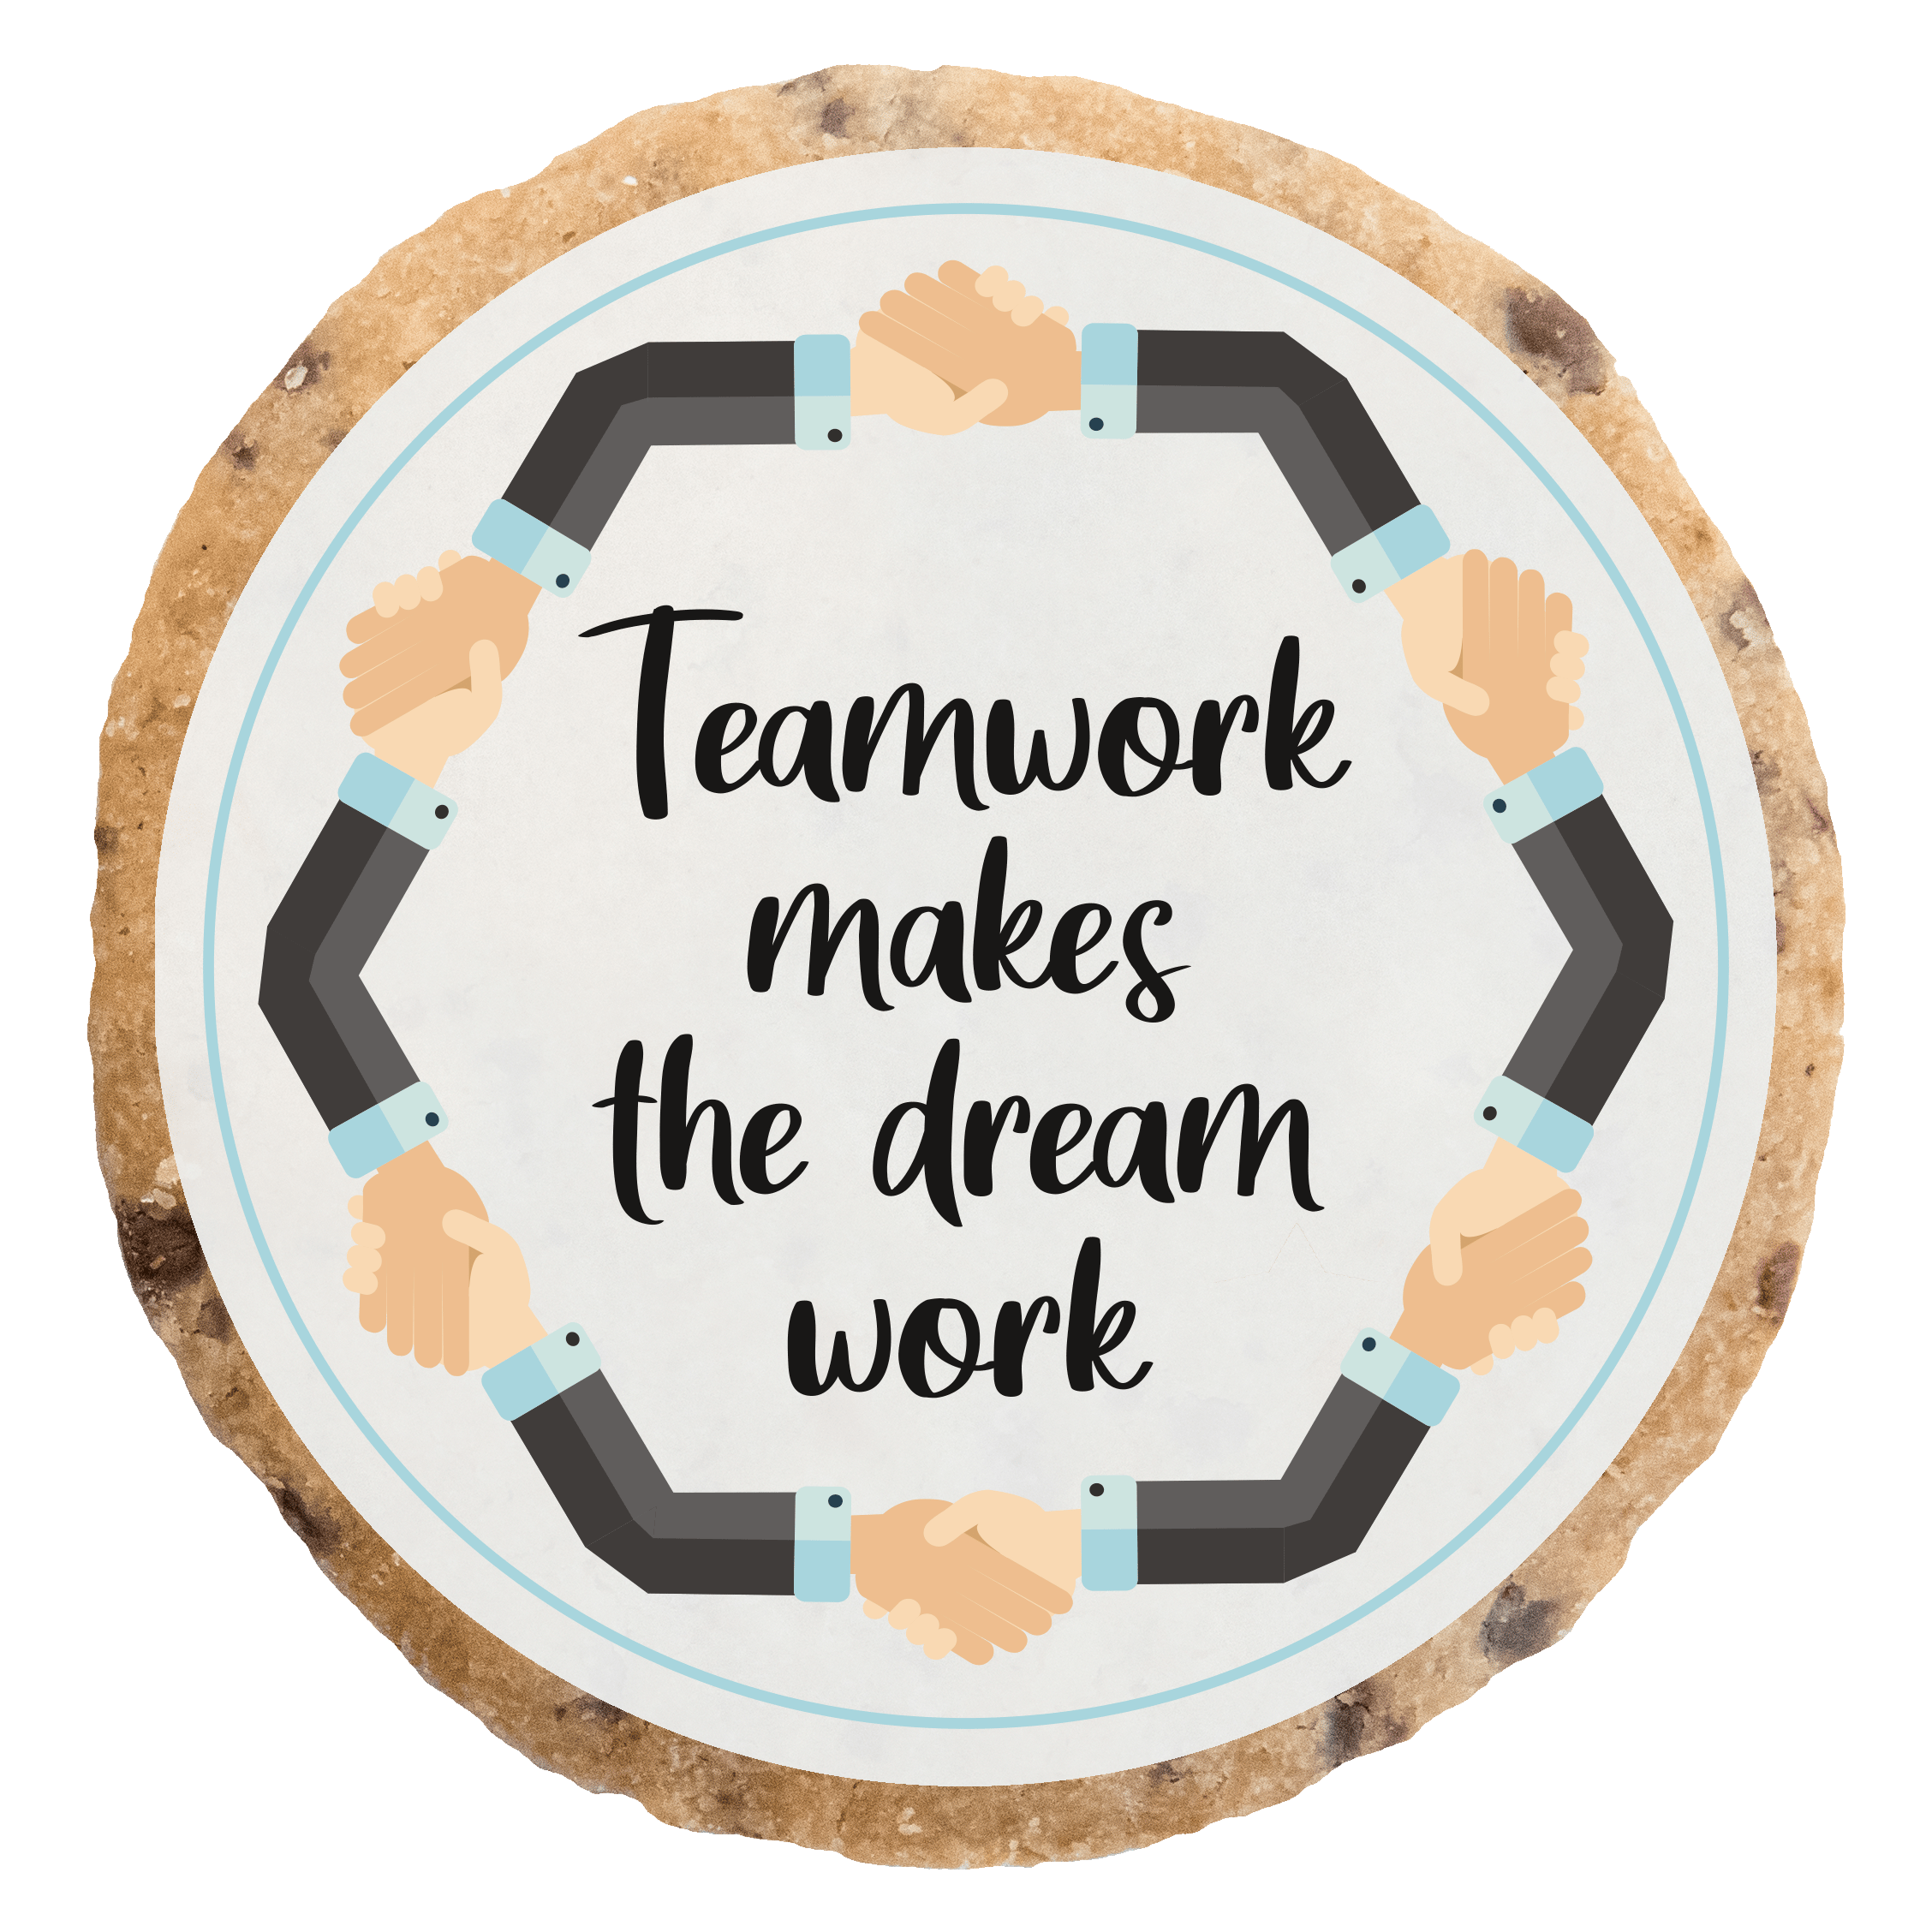 "Teamwork makes the dream work" MotivKEKS 